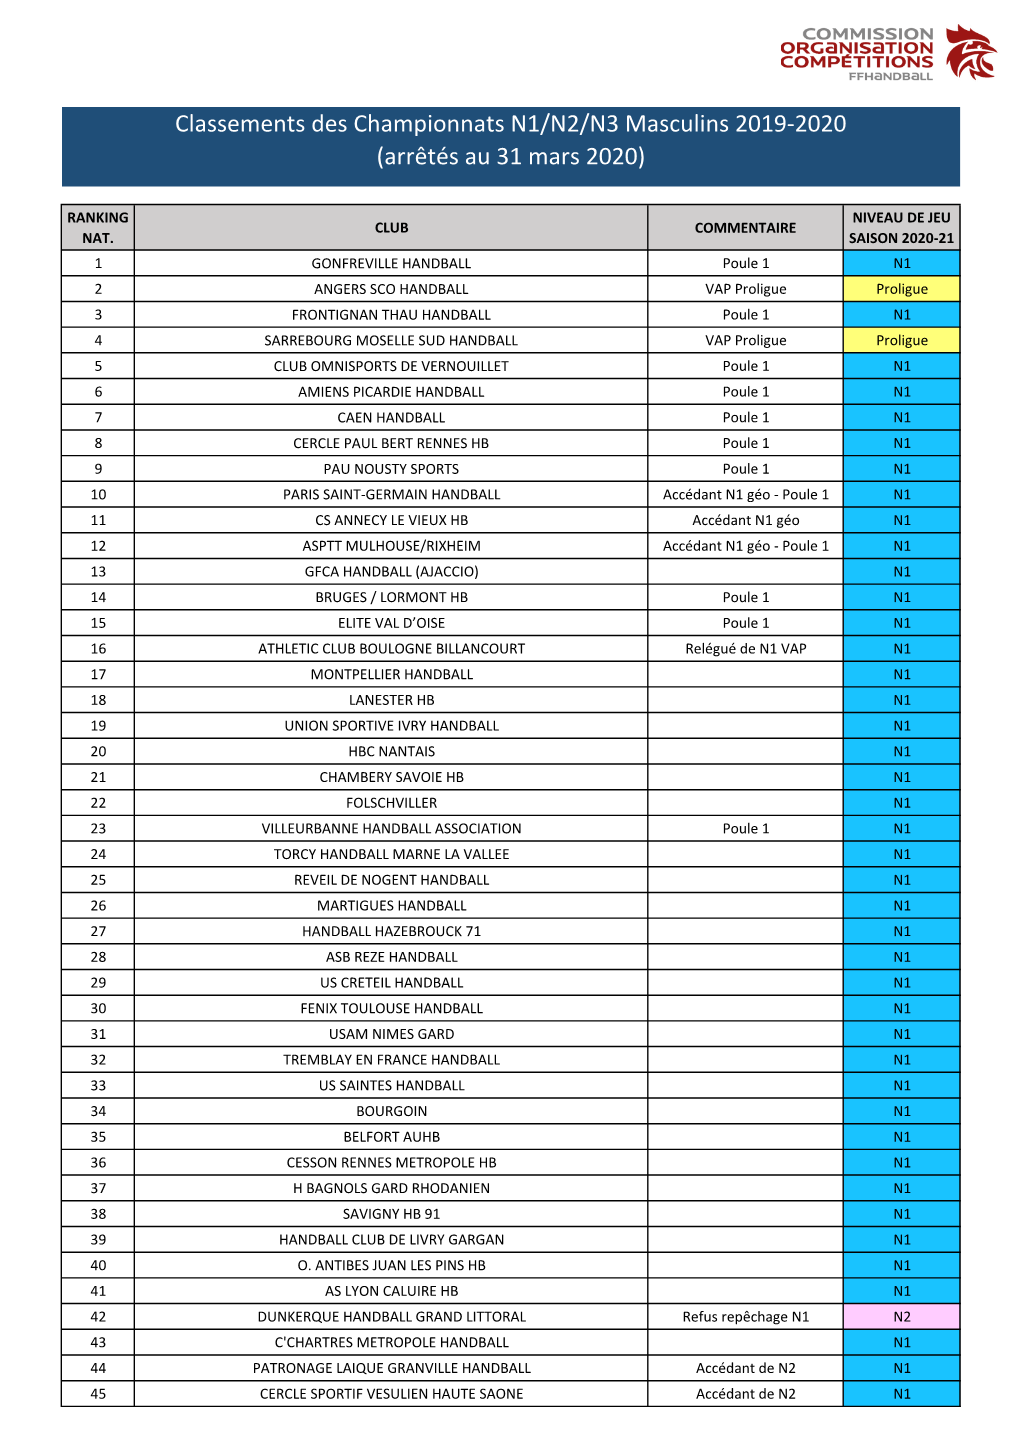 Classements Des Championnats N1/N2/N3 Masculins 2019-2020 (Arrêtés Au 31 Mars 2020)